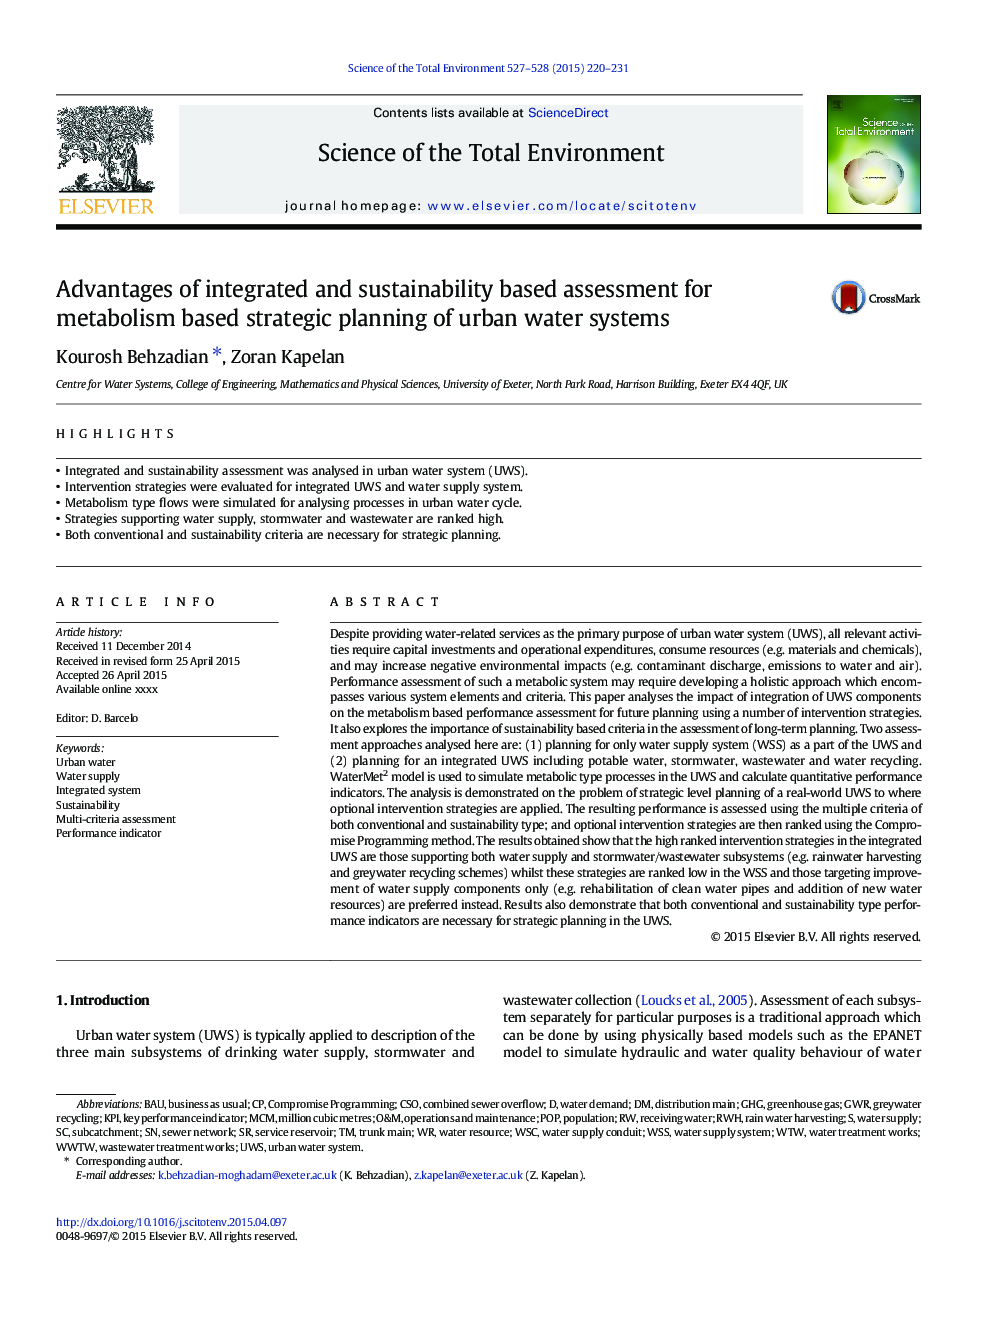 مزایای ارزیابی مبتنی بر یکپارچه و پایداری برای برنامه ریزی استراتژیک مبتنی بر متابولیسم سیستم های آب شهری 